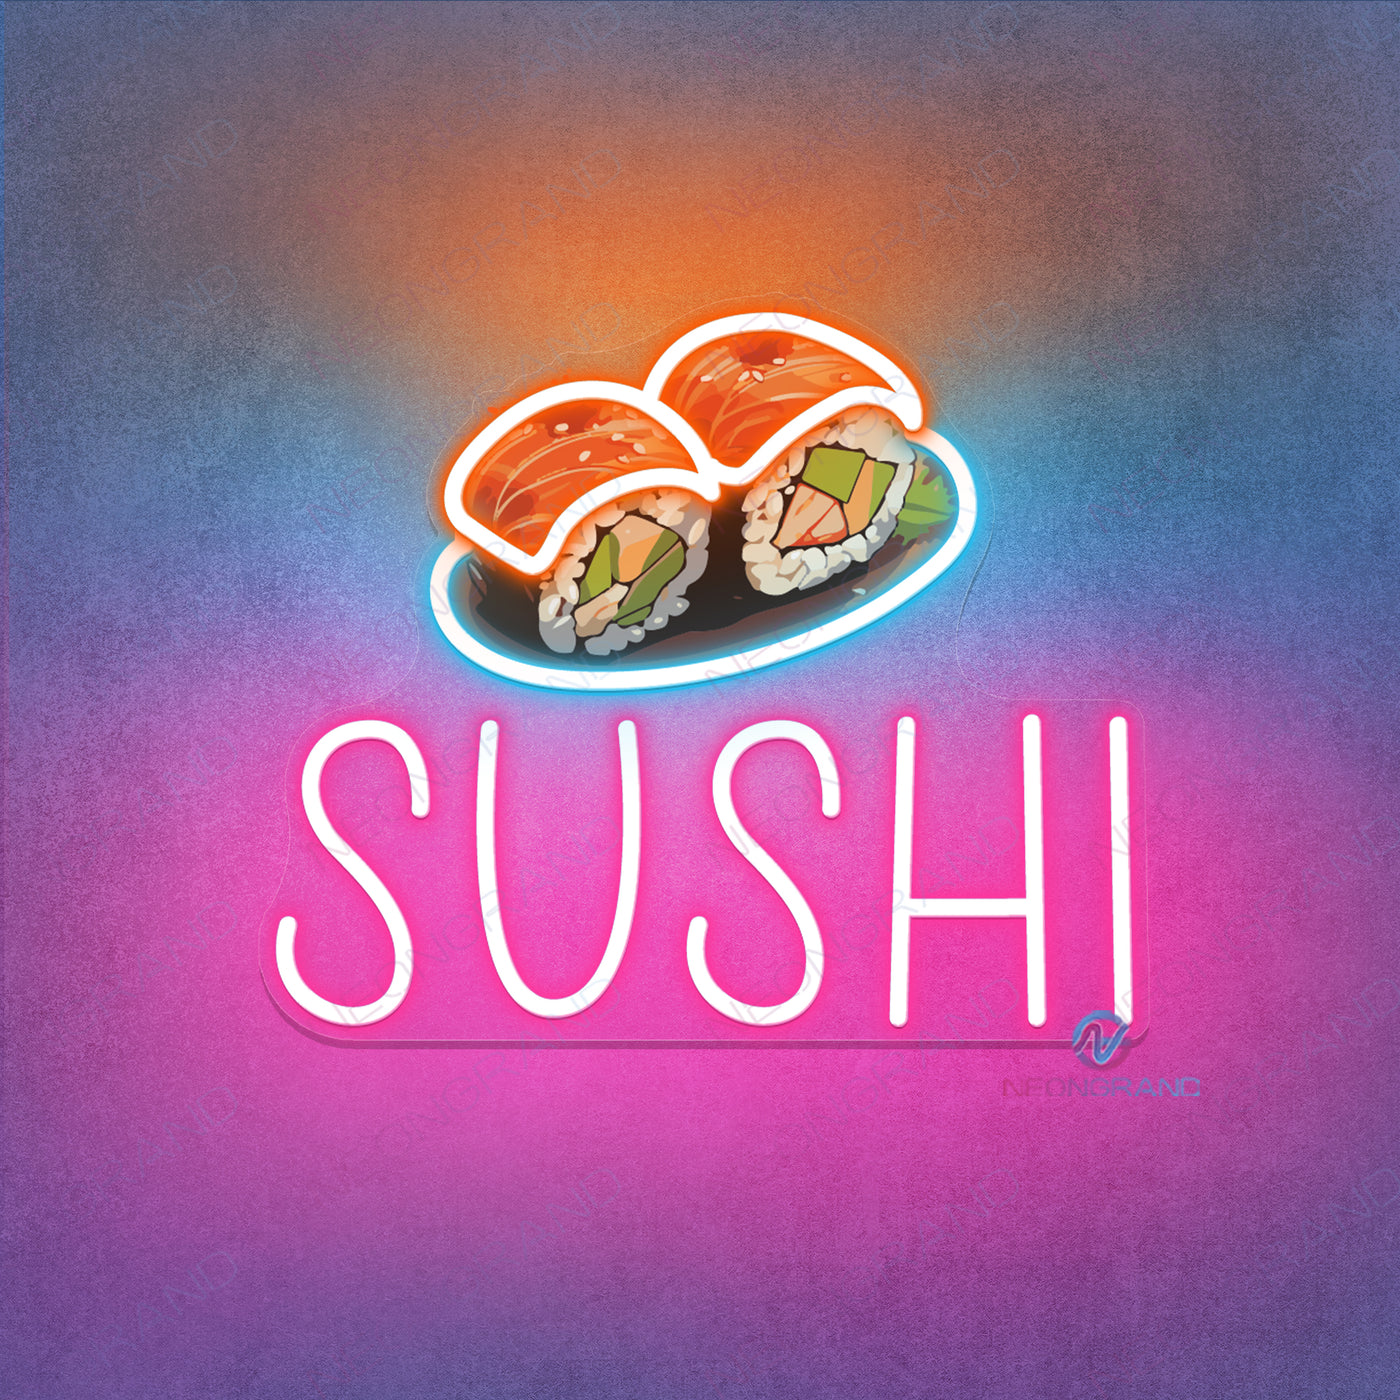 Sushi Neon Sign Led Light